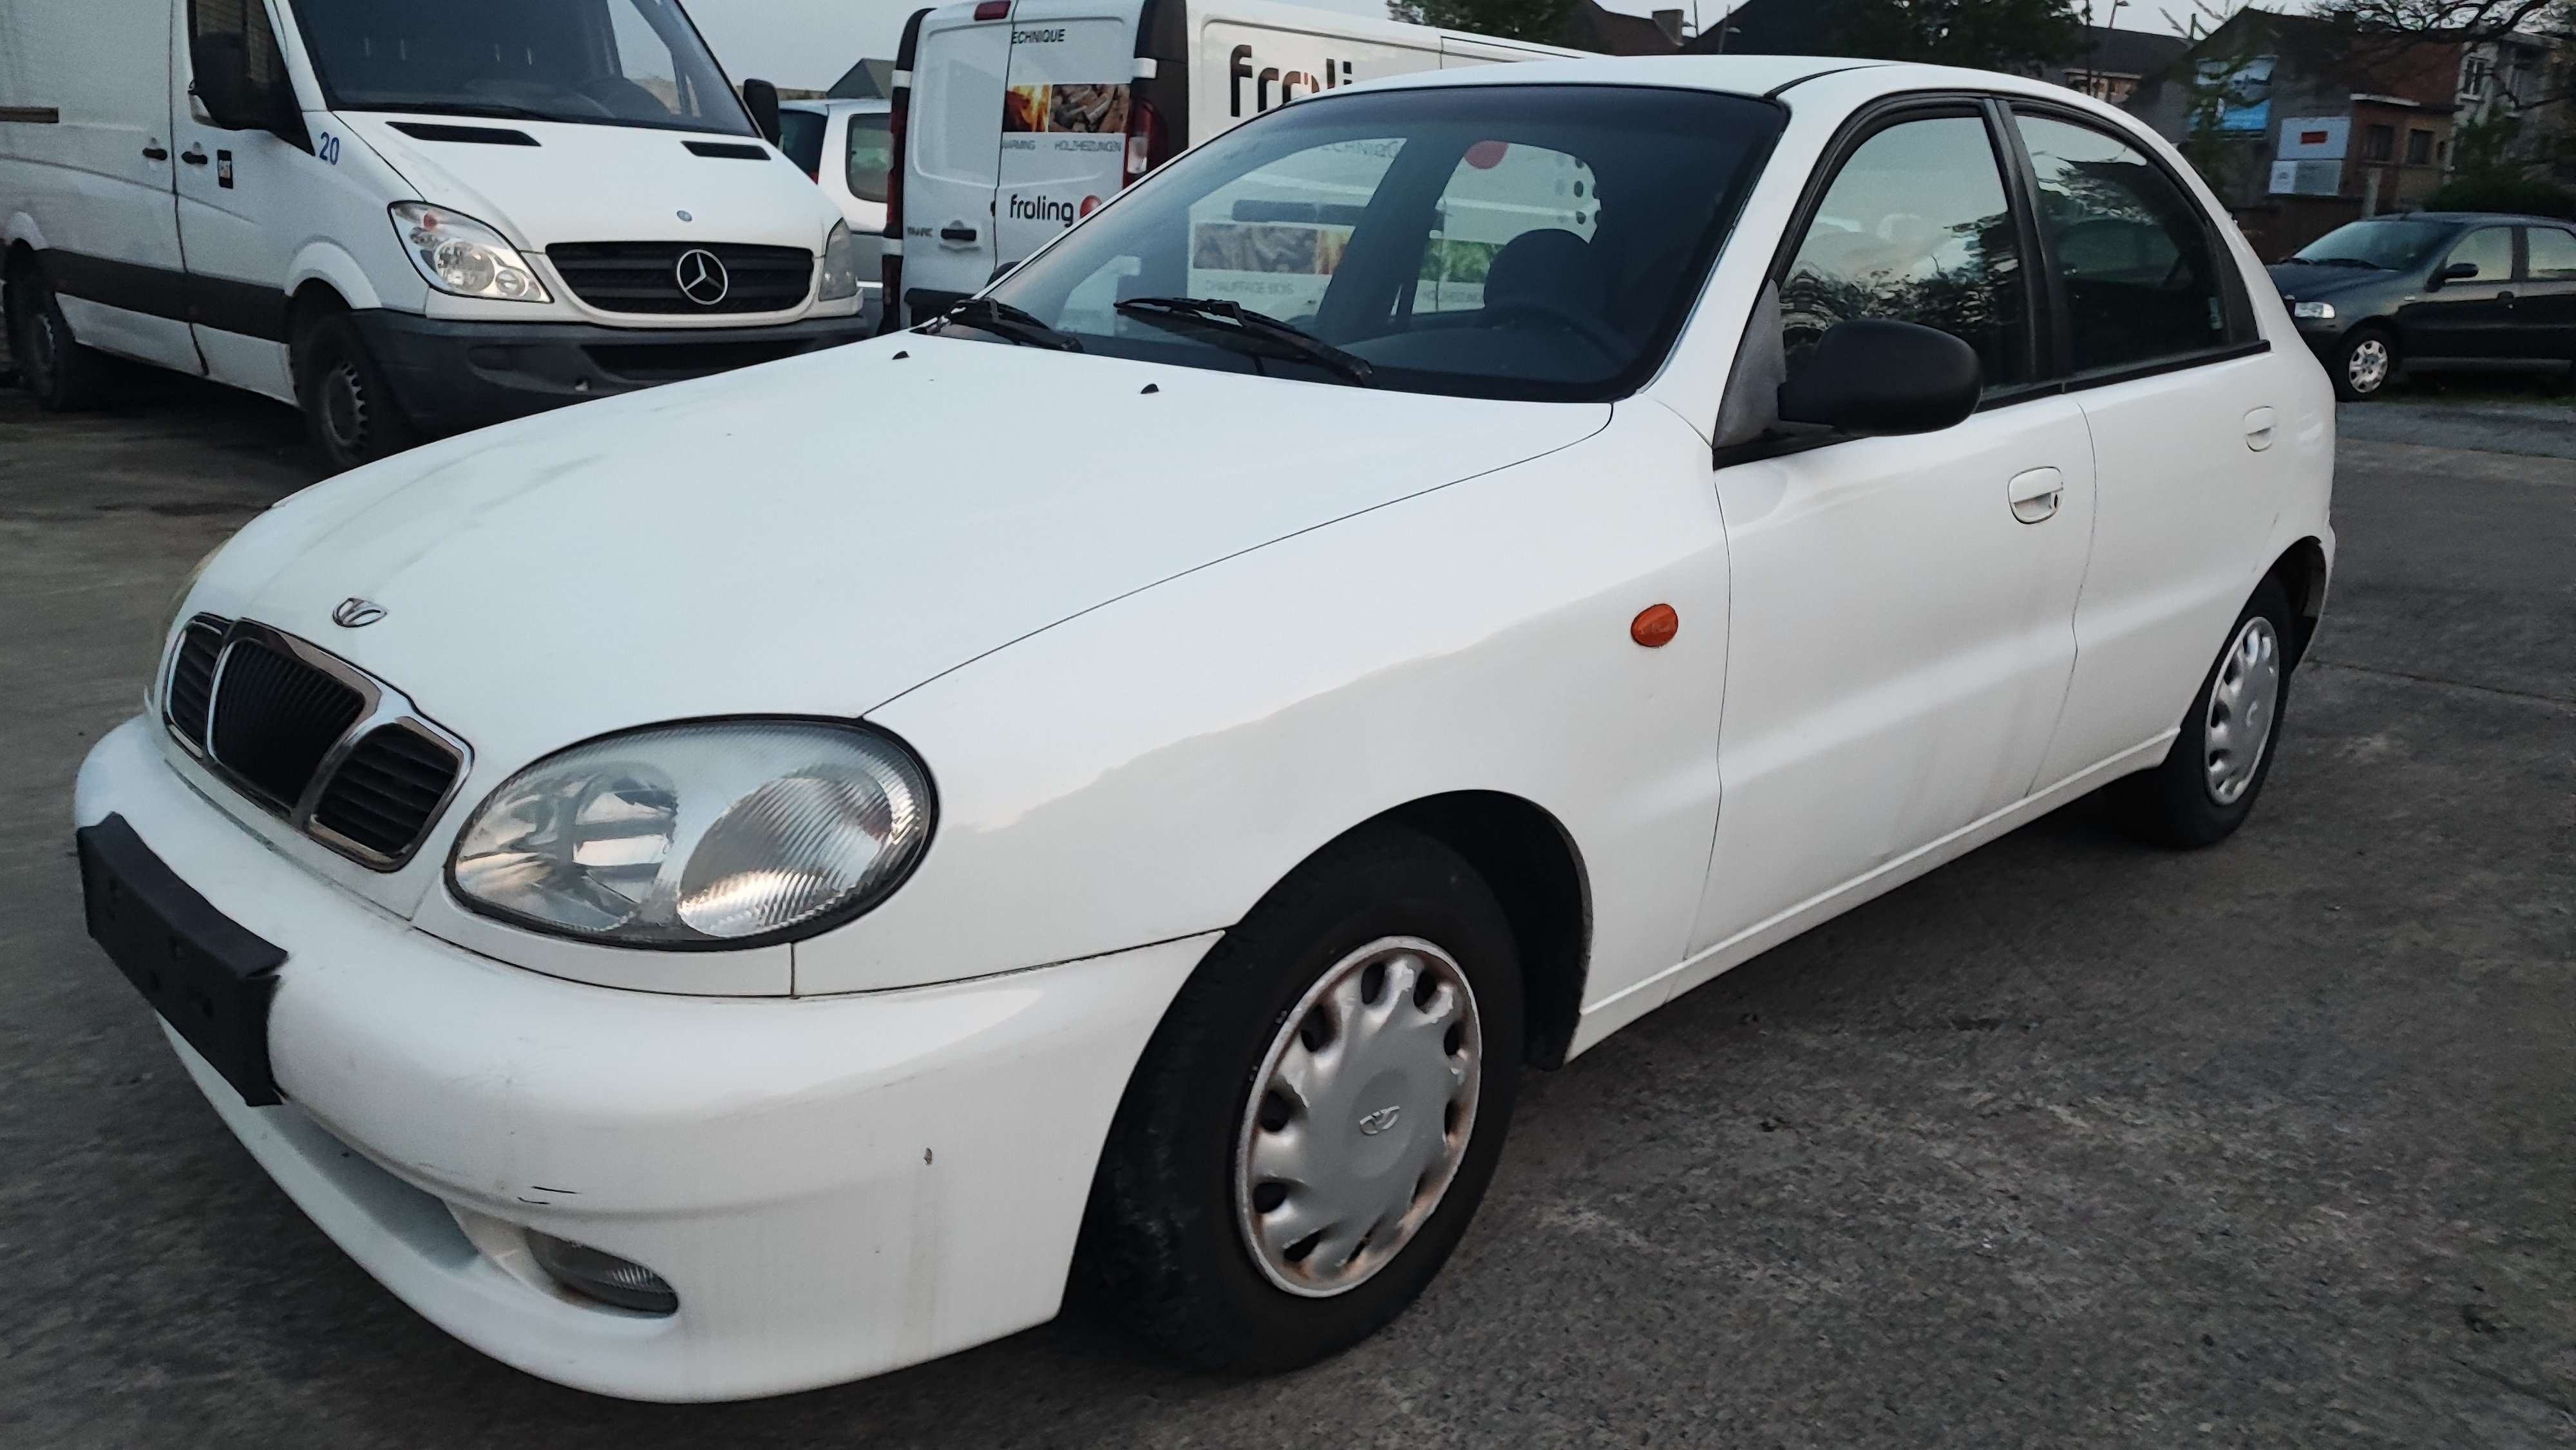 Daewoo Lanos Sedan in White used in Erembodegem for € 1,999.-